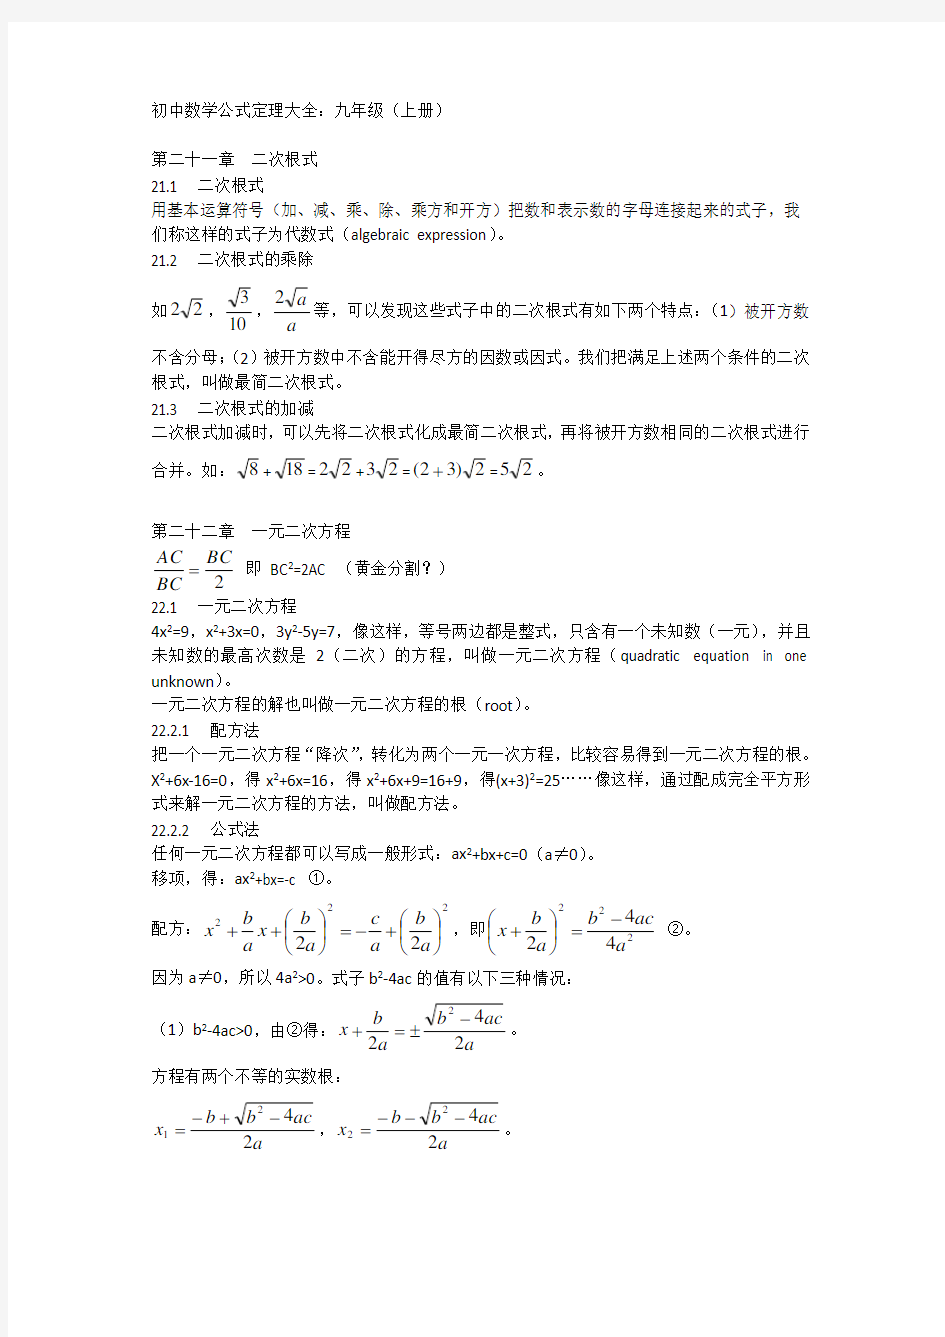 初中数学公式定理大全九年级(上册)